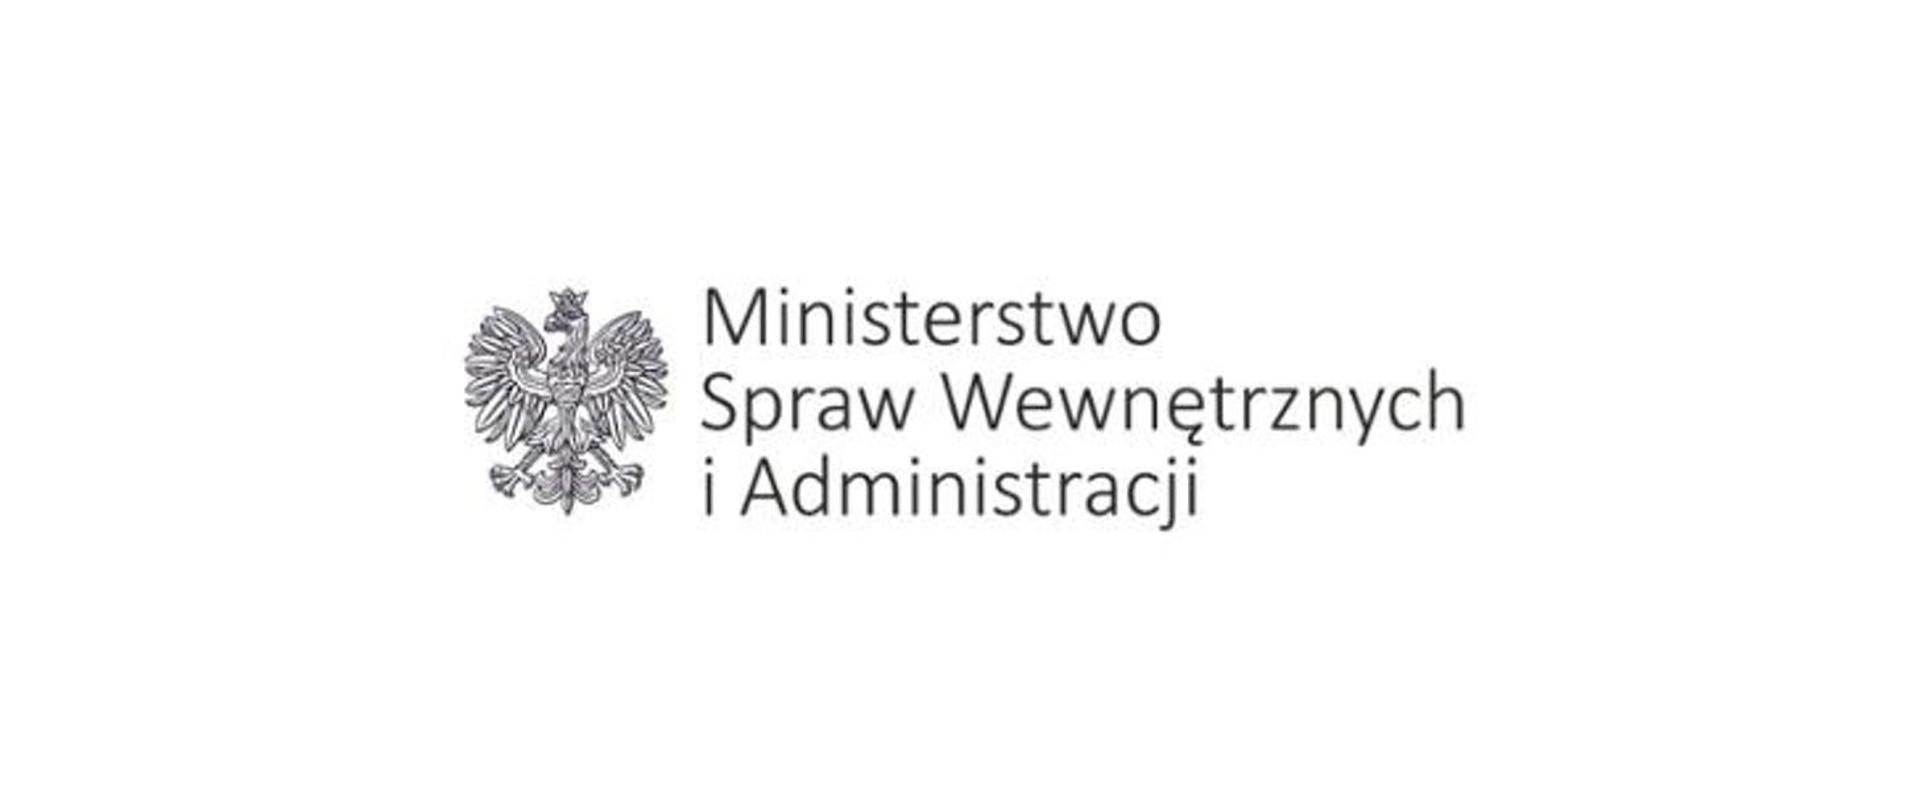 Zdjęcie przedstawia orła z napisem Ministerstwo Spraw Wewnętrznych i Administracji